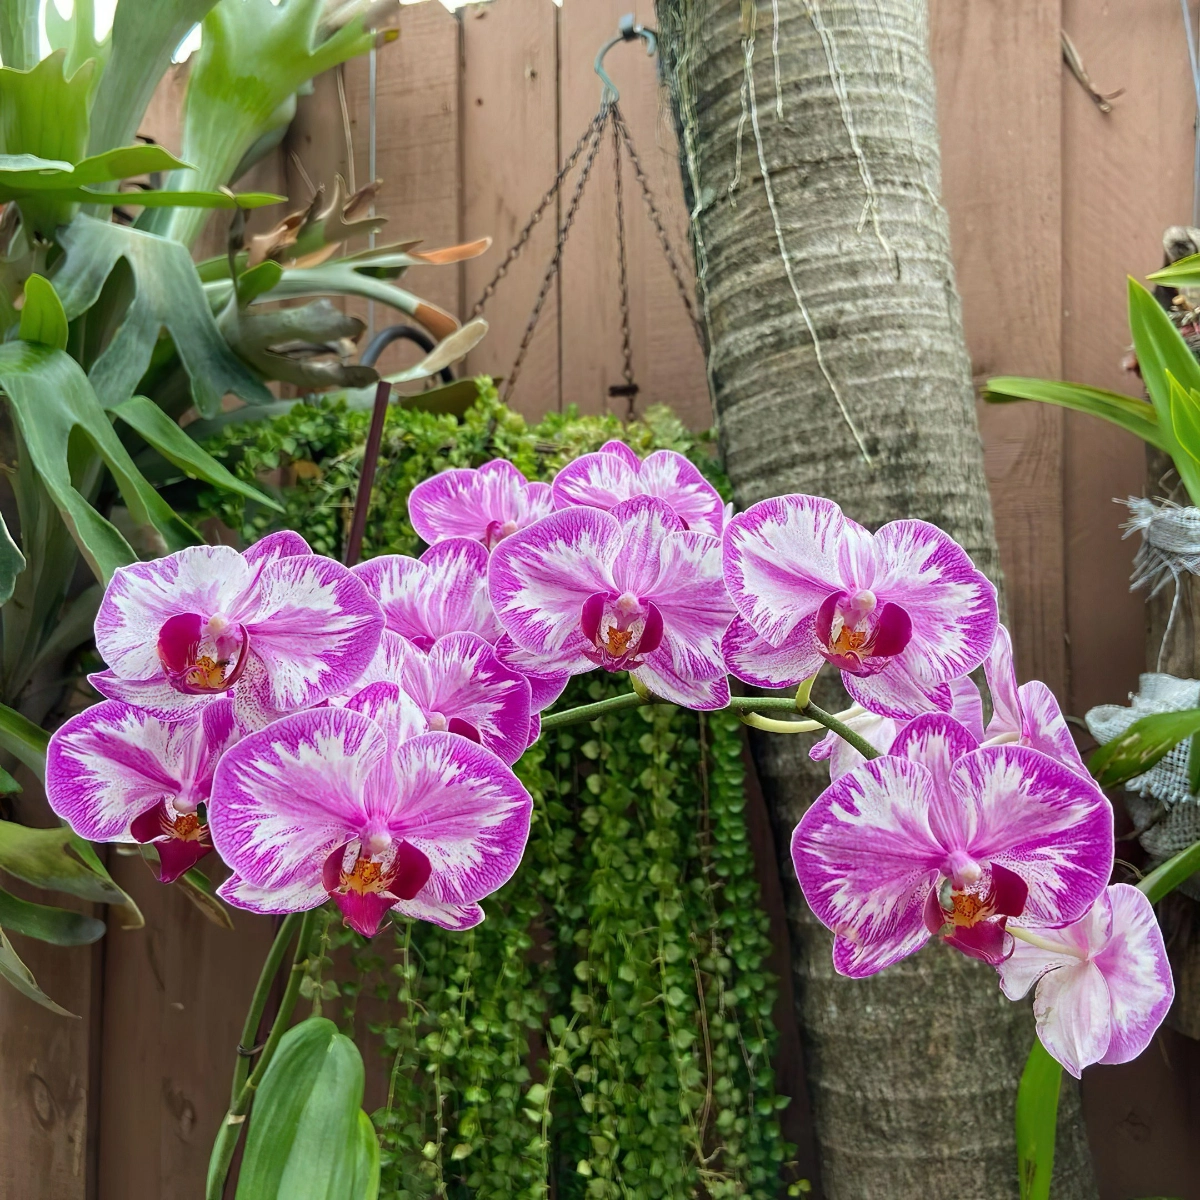 orchideen duengen mit nauterlichen hausmitteln tipps orchids305